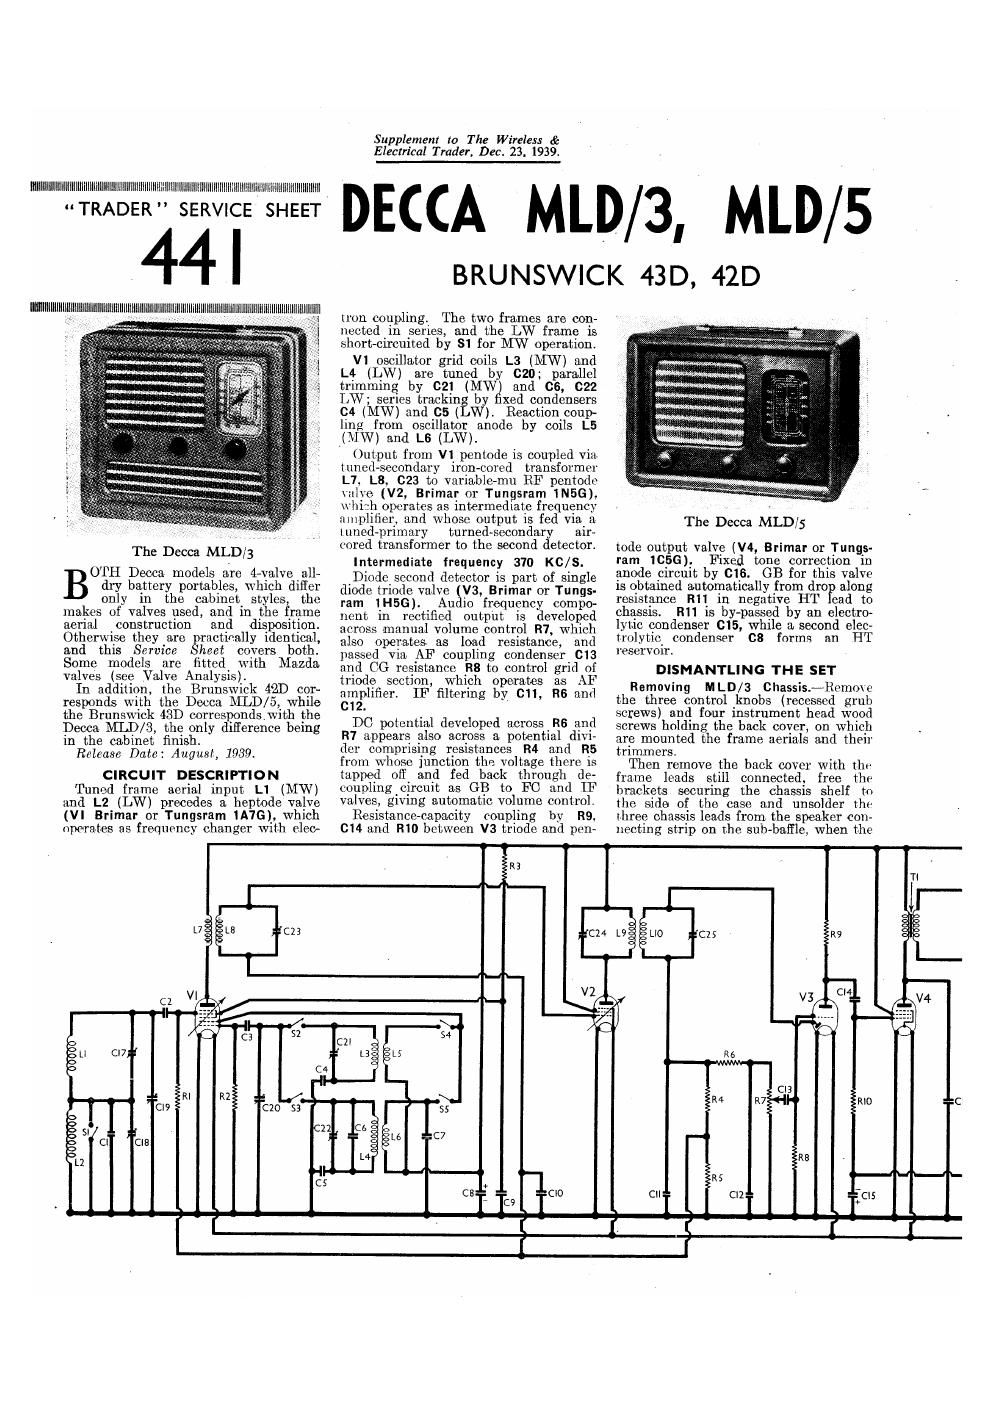 decca mld 42d 43d service manual